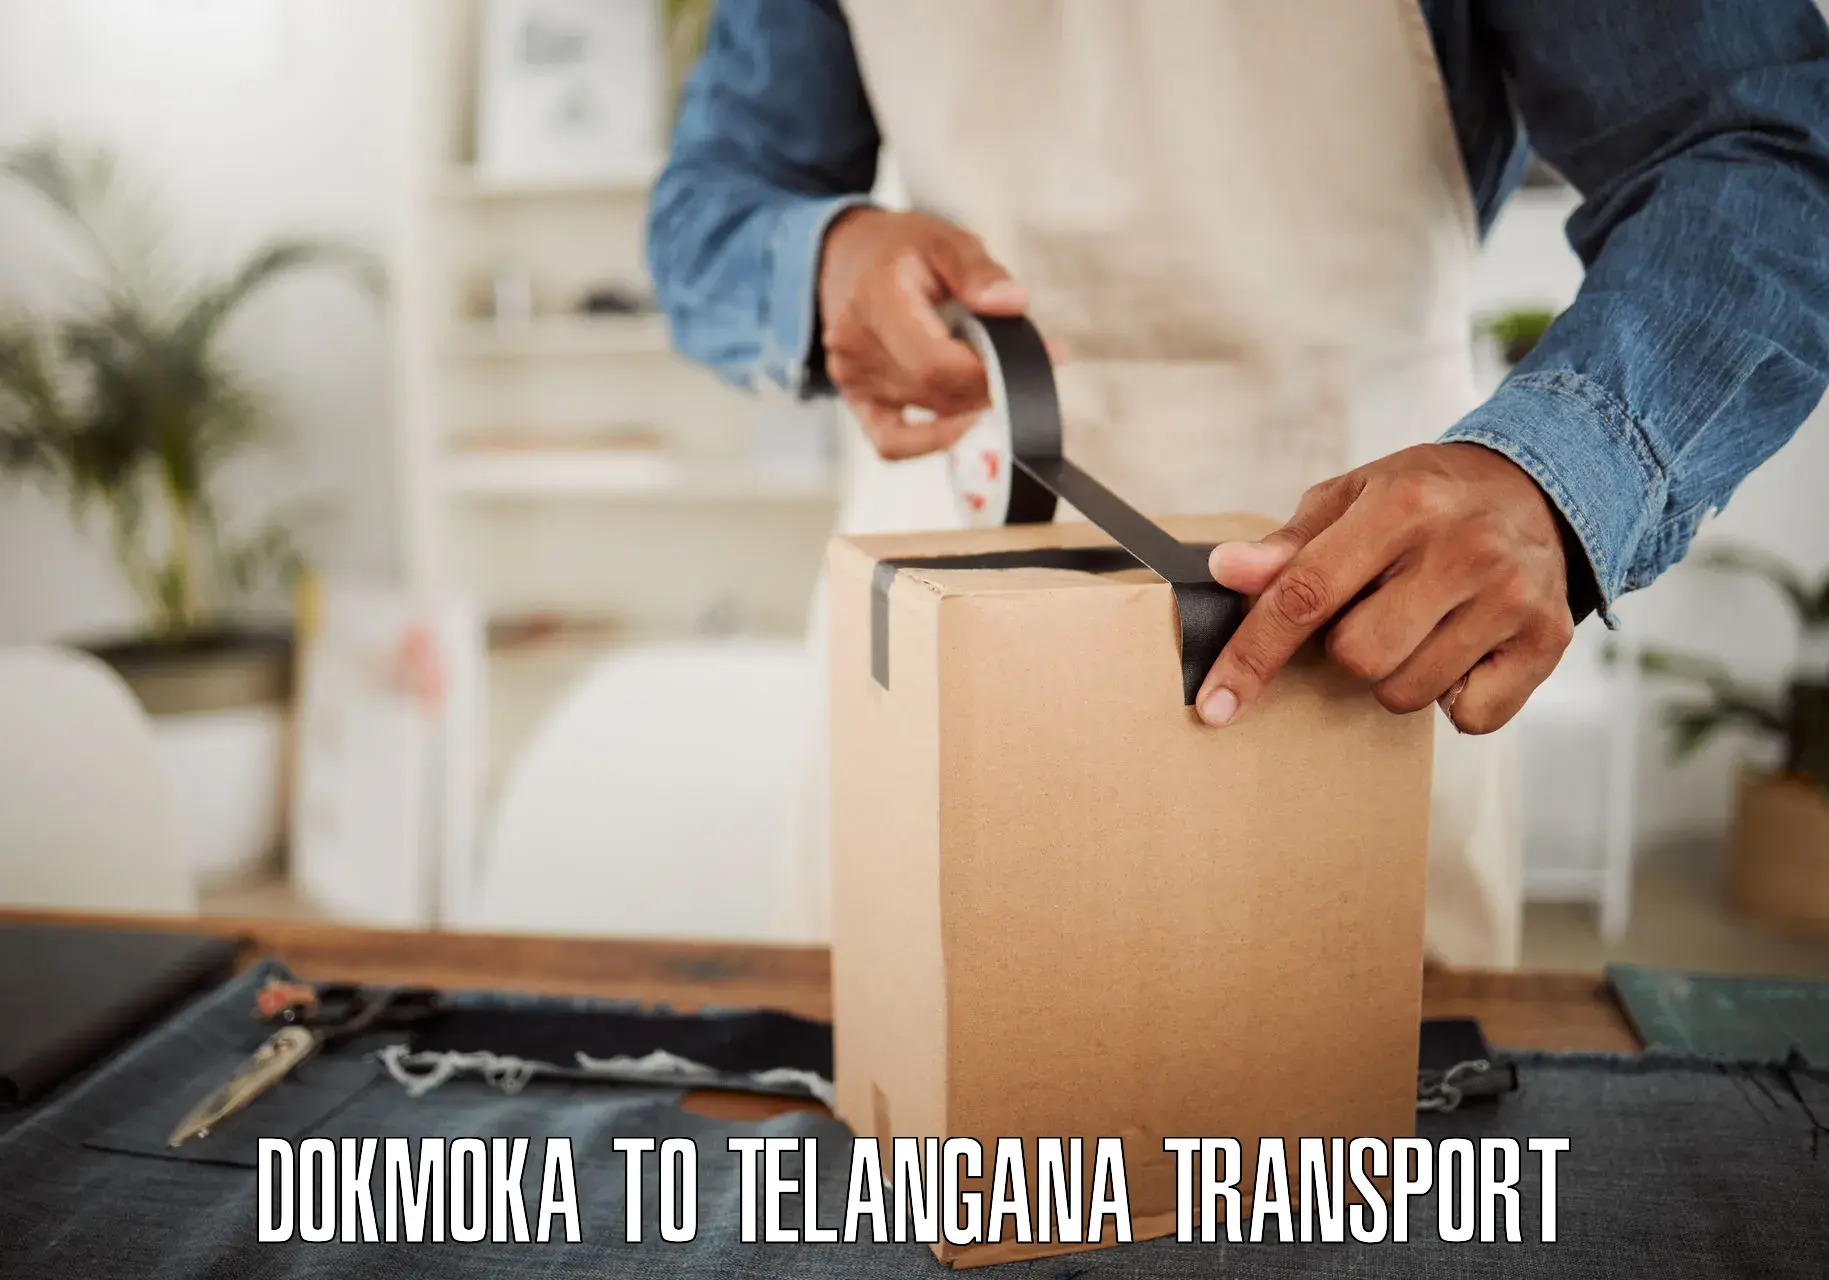 Commercial transport service Dokmoka to Nizamabad